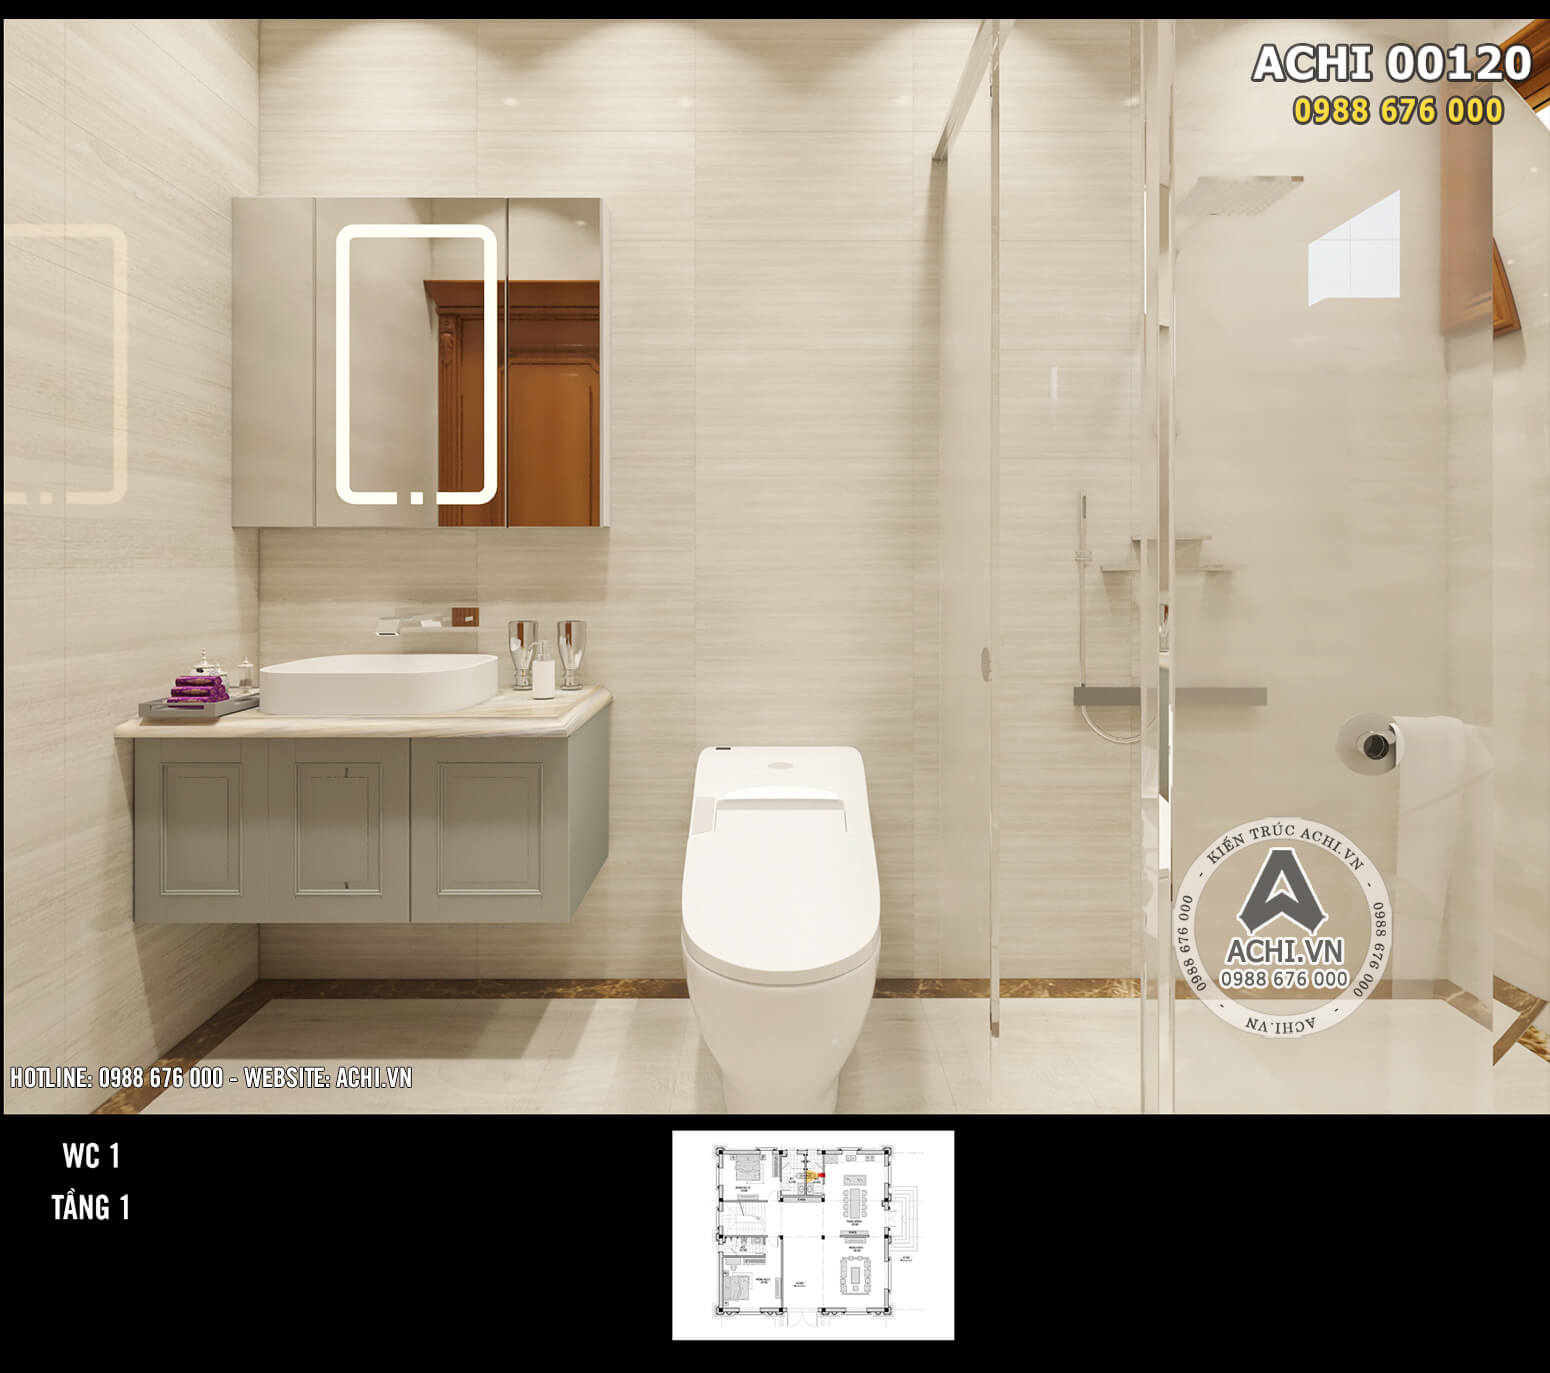 Thiết kế nội thất nhà vệ sinh thiết kế đơn giản những gọn gàng, ngăn nắp